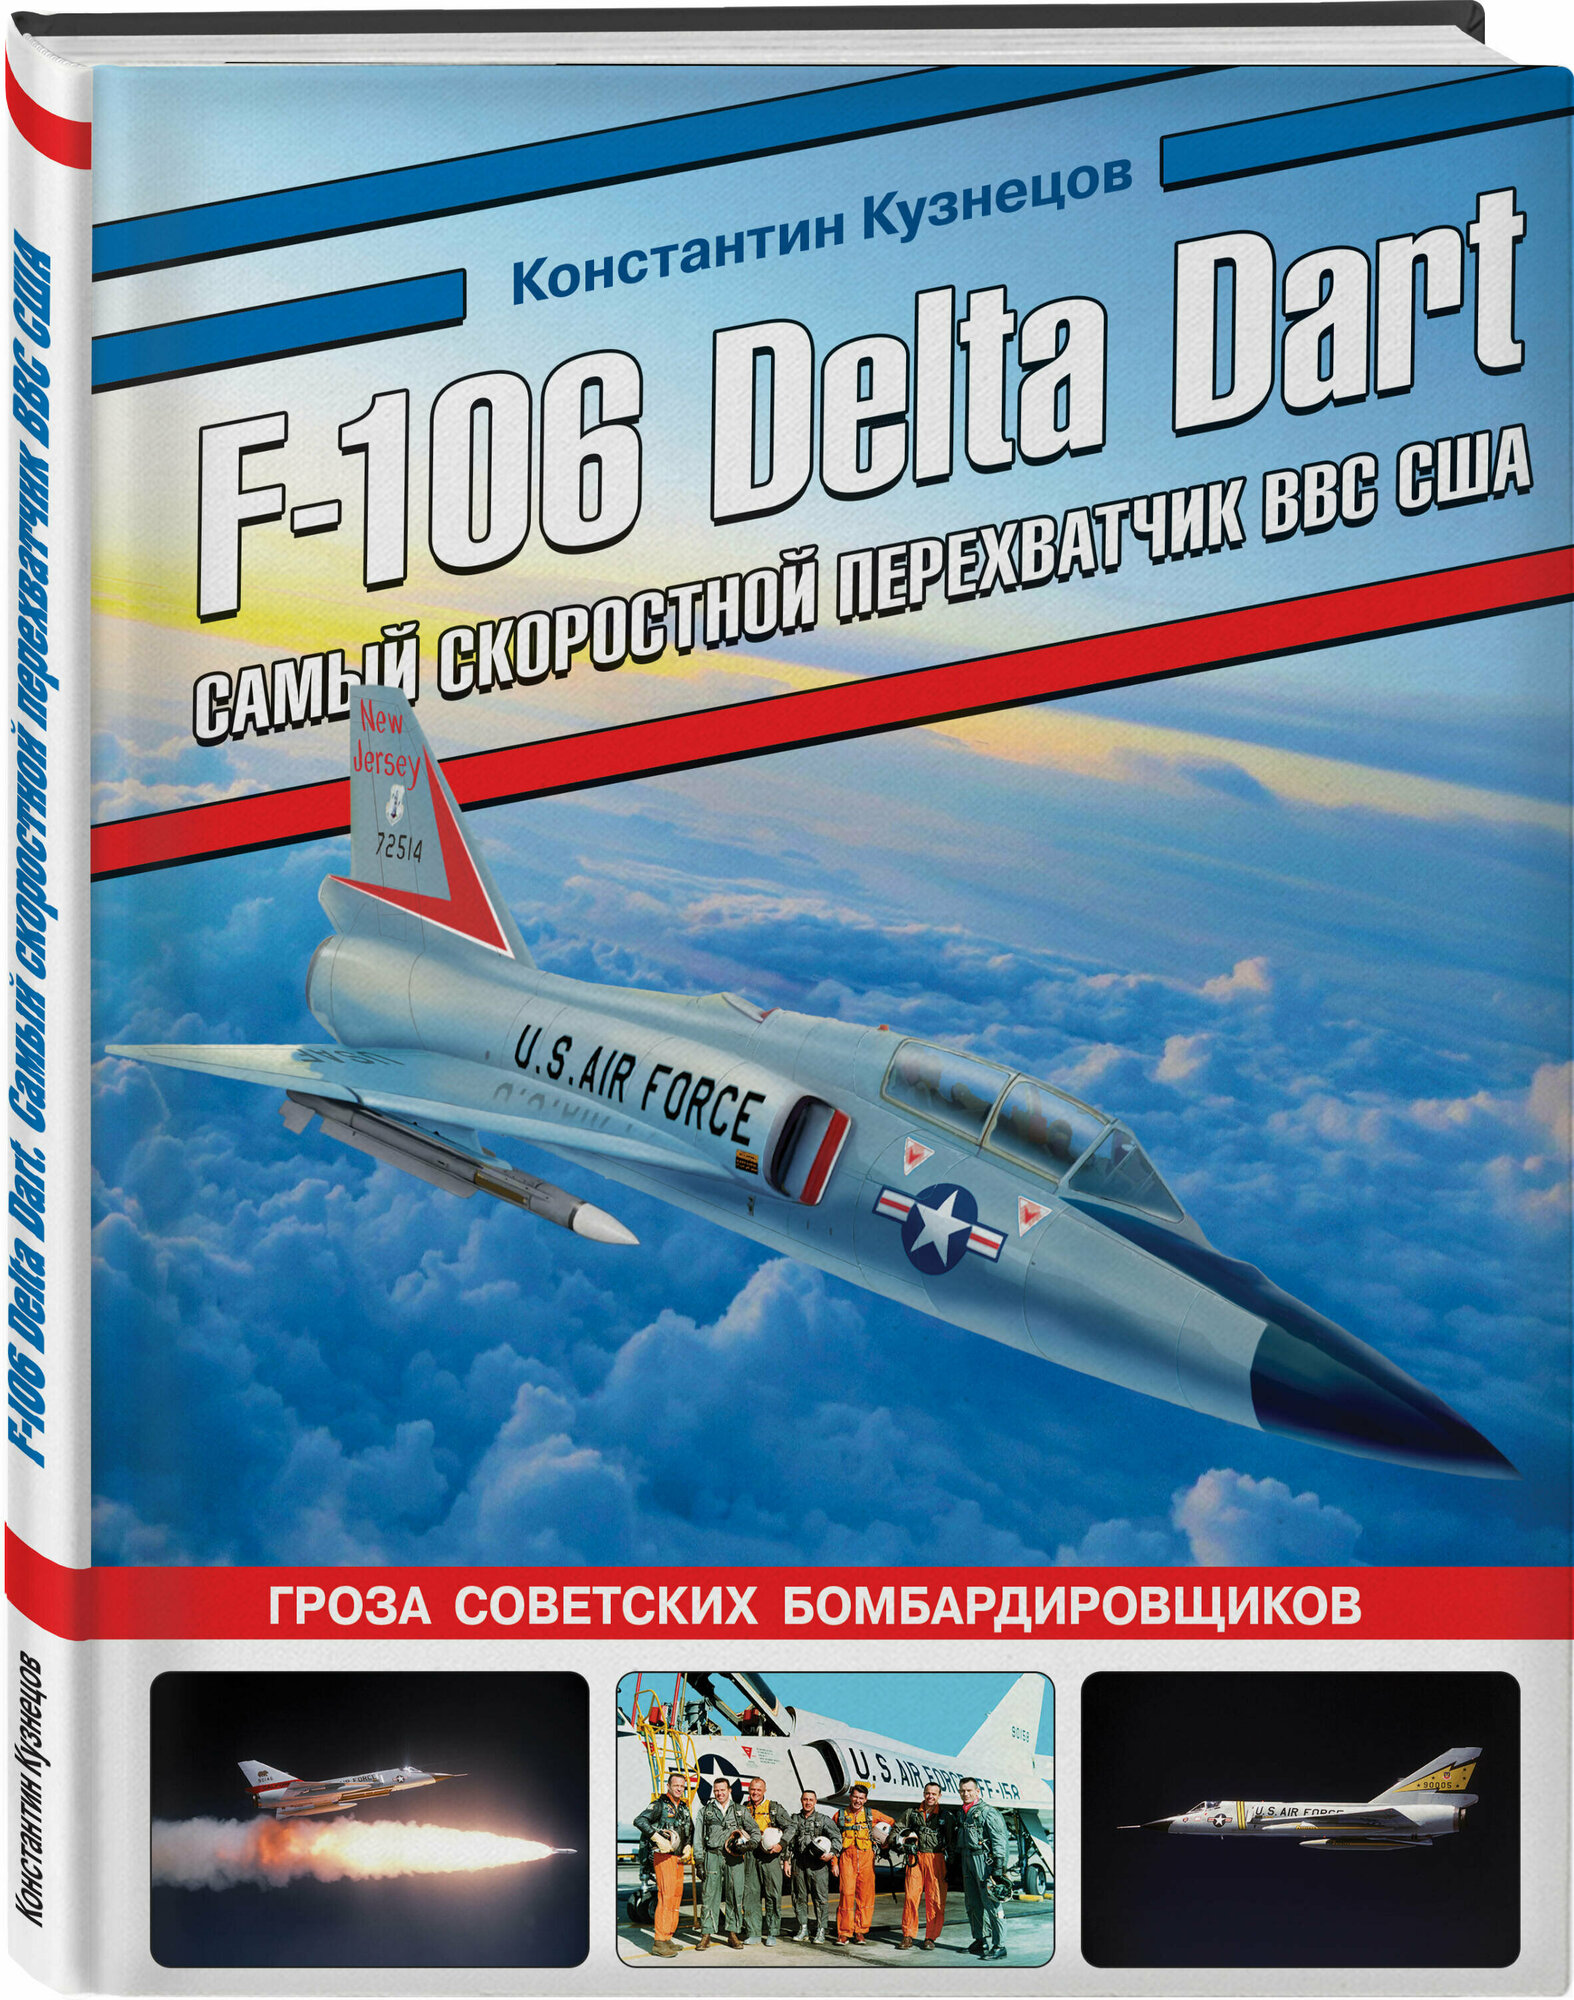 F-106 Delta Dart. Самый скоростной перехватчик ВВС США - фото №1